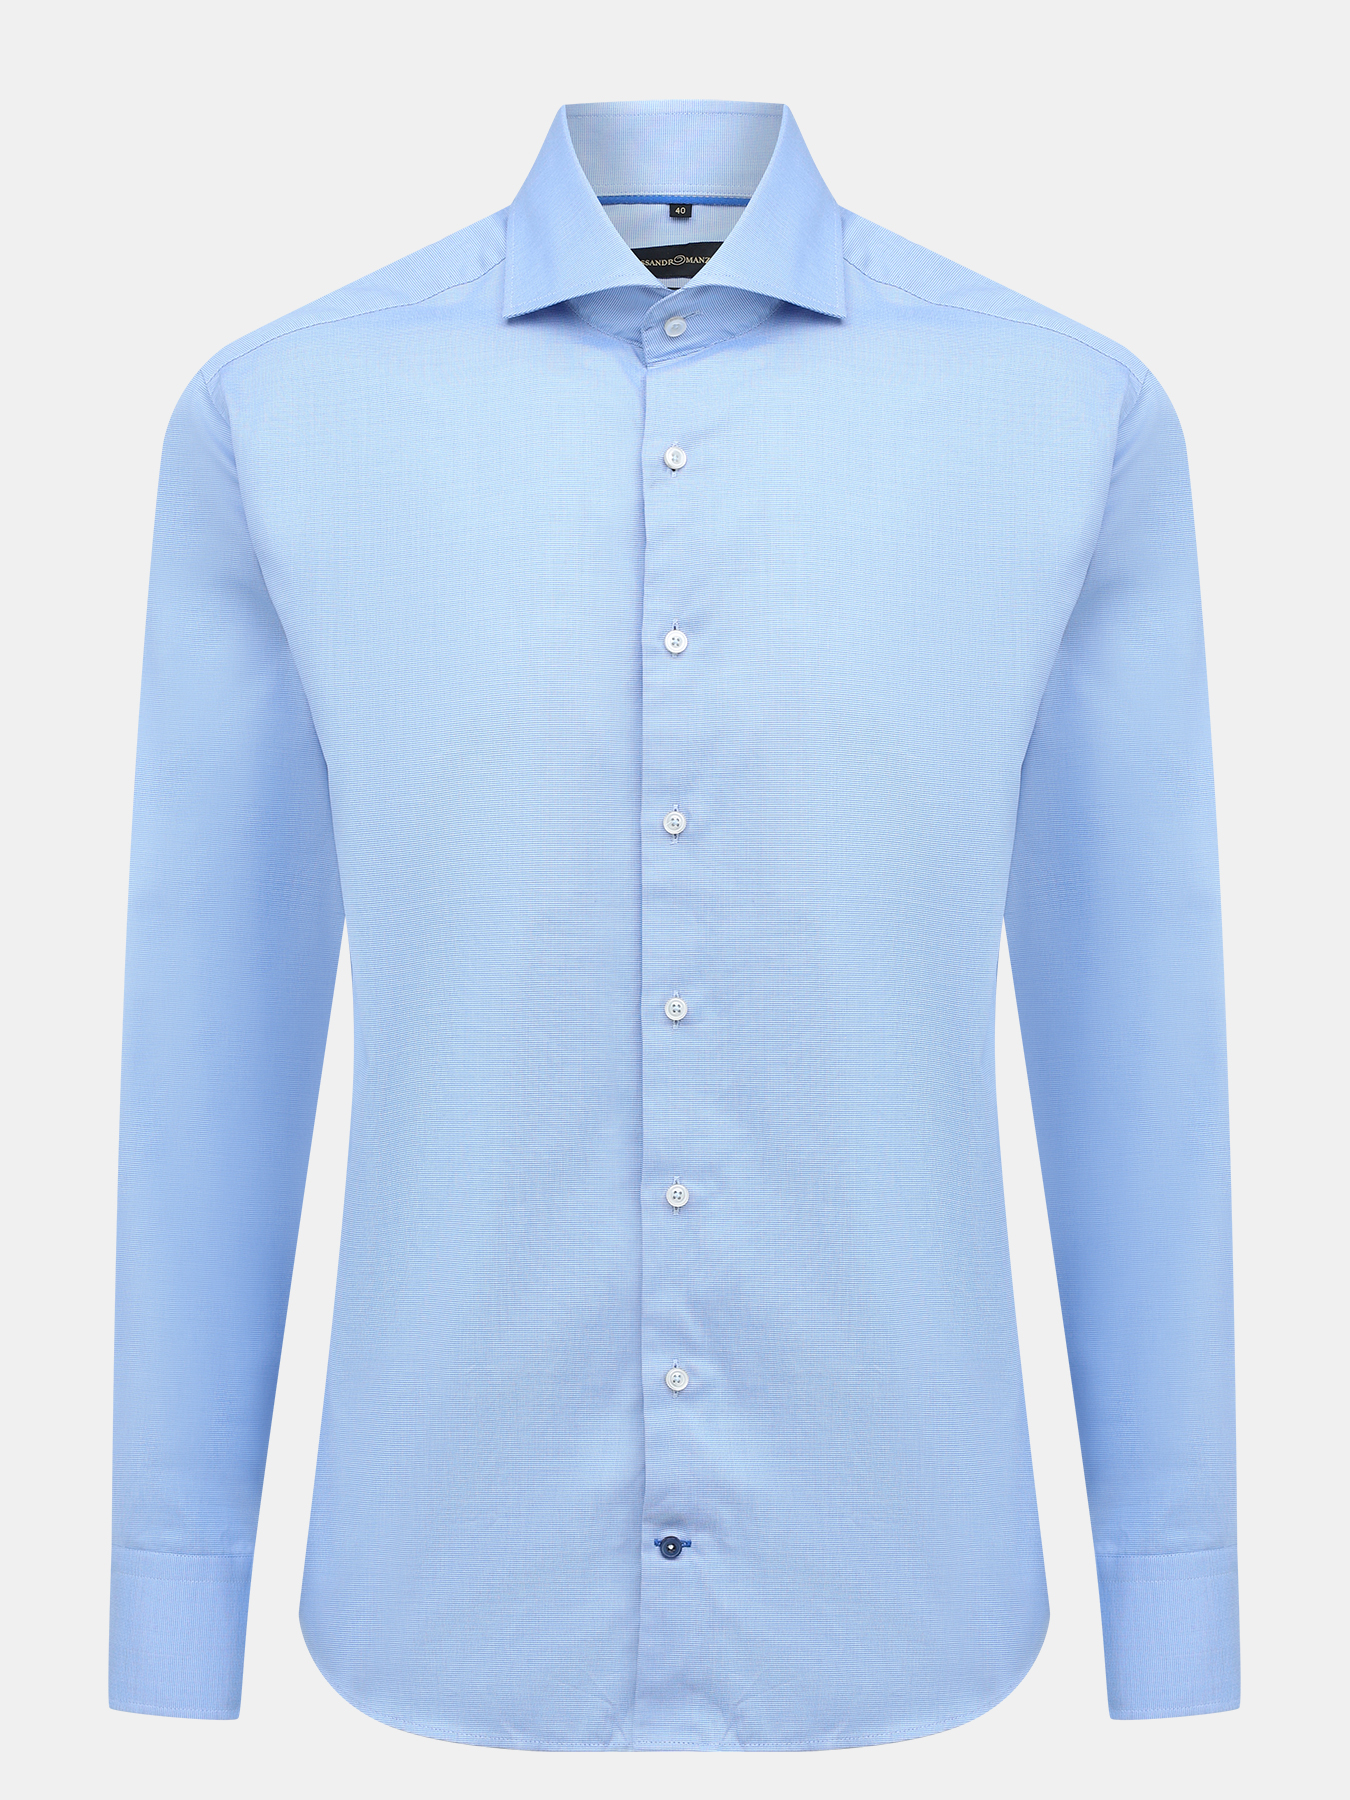 Рубашка Alessandro Manzoni 366027-052, цвет синий, размер 60 - фото 1